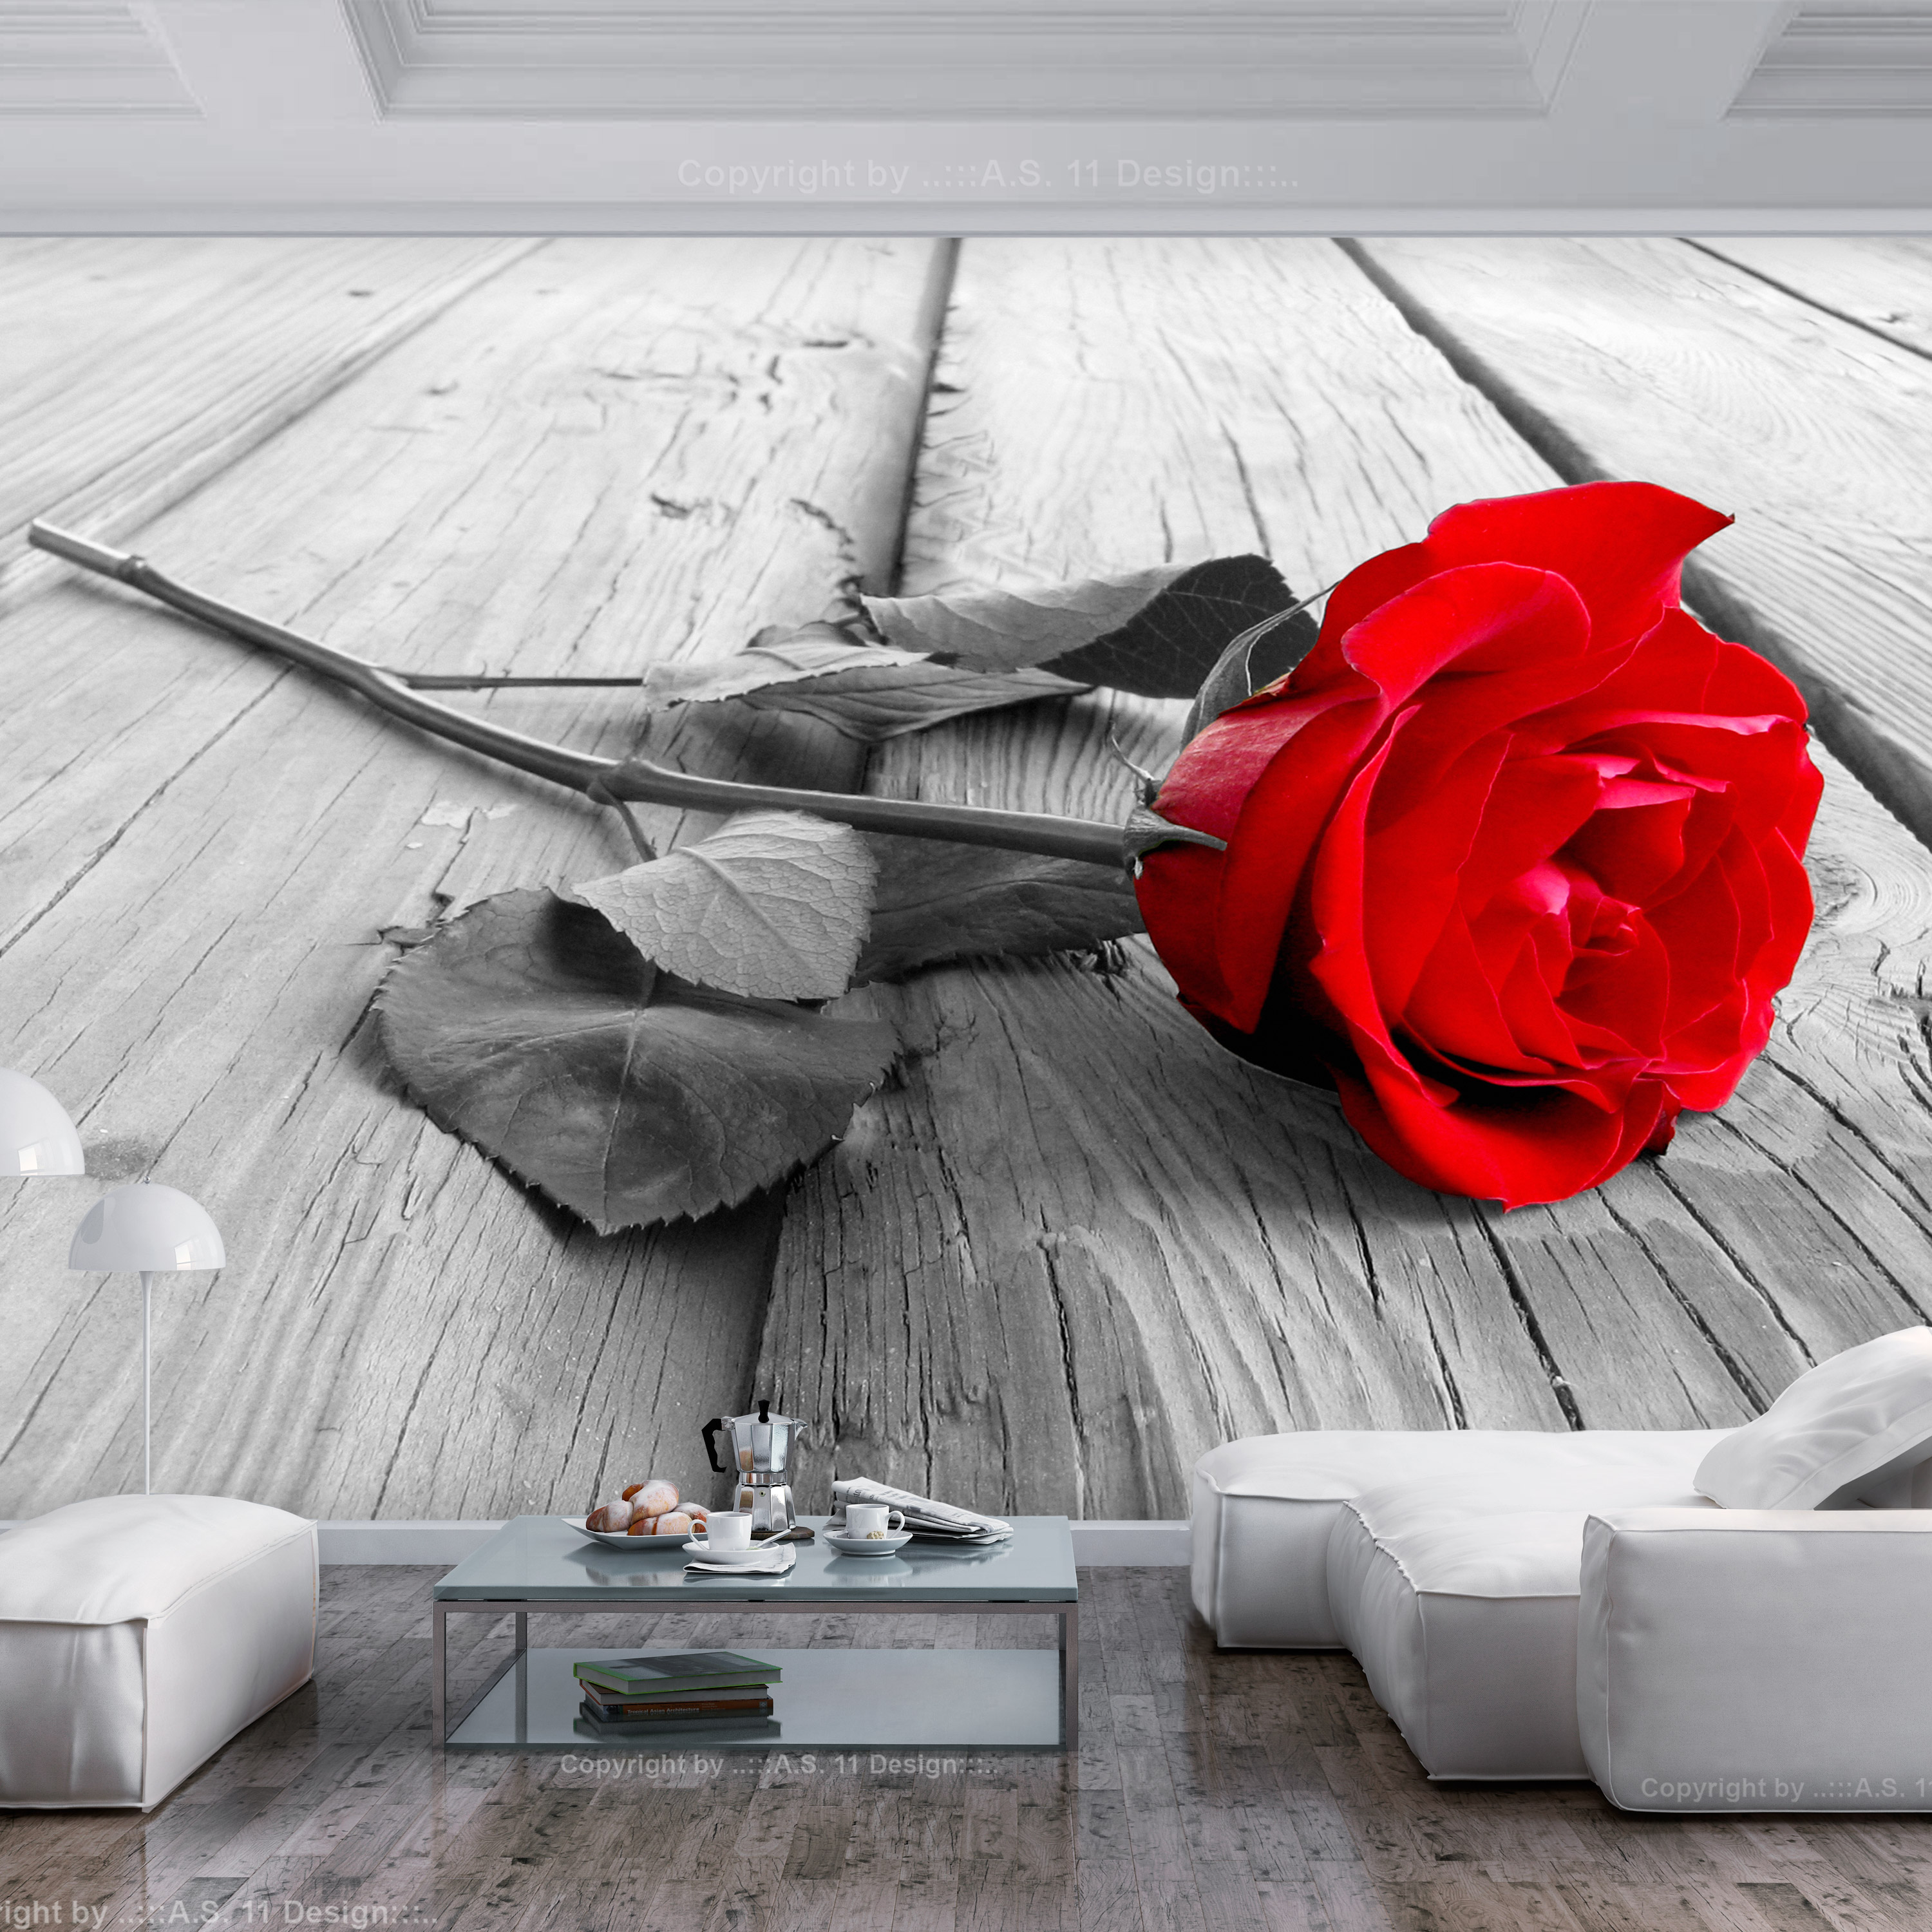 Self-adhesive Wallpaper - Abandoned Rose - 441x315